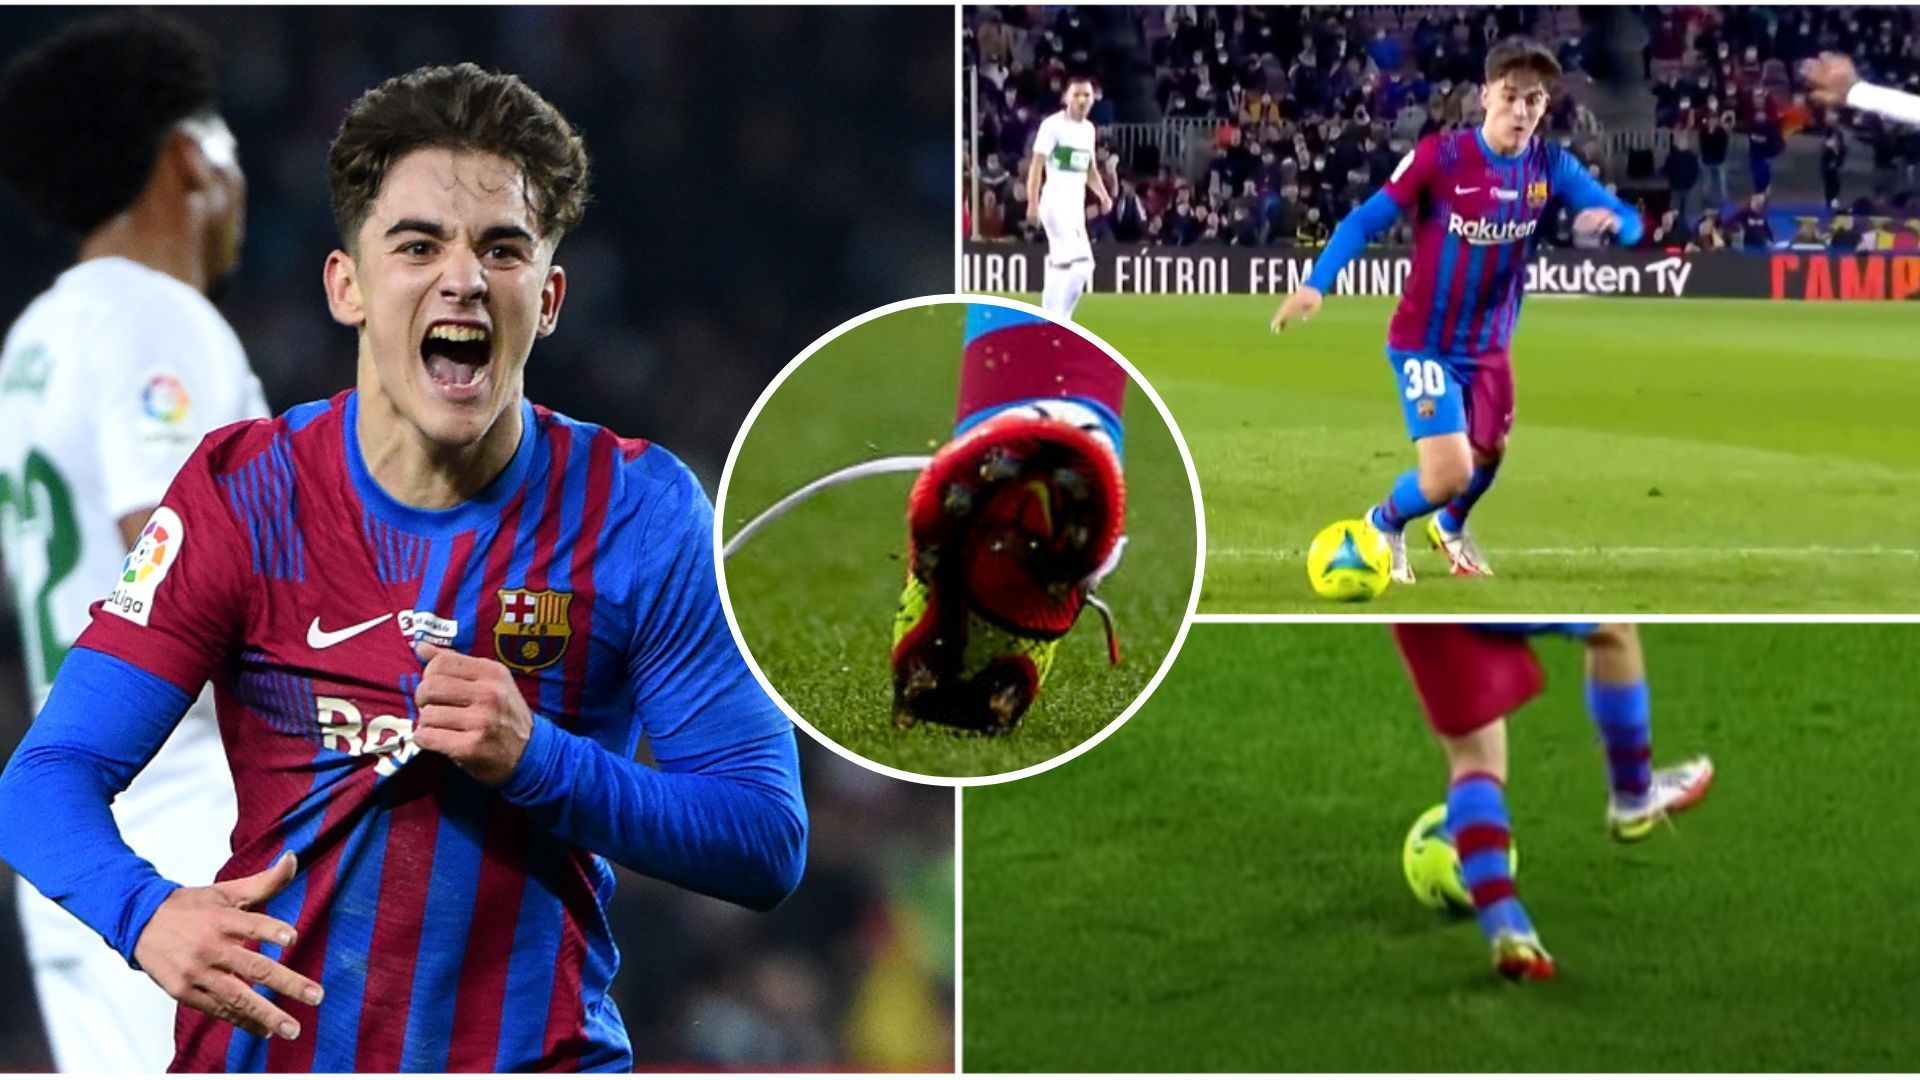 ¿Por qué la estrella de Barcelona y España juega con las botas desabrochadas?